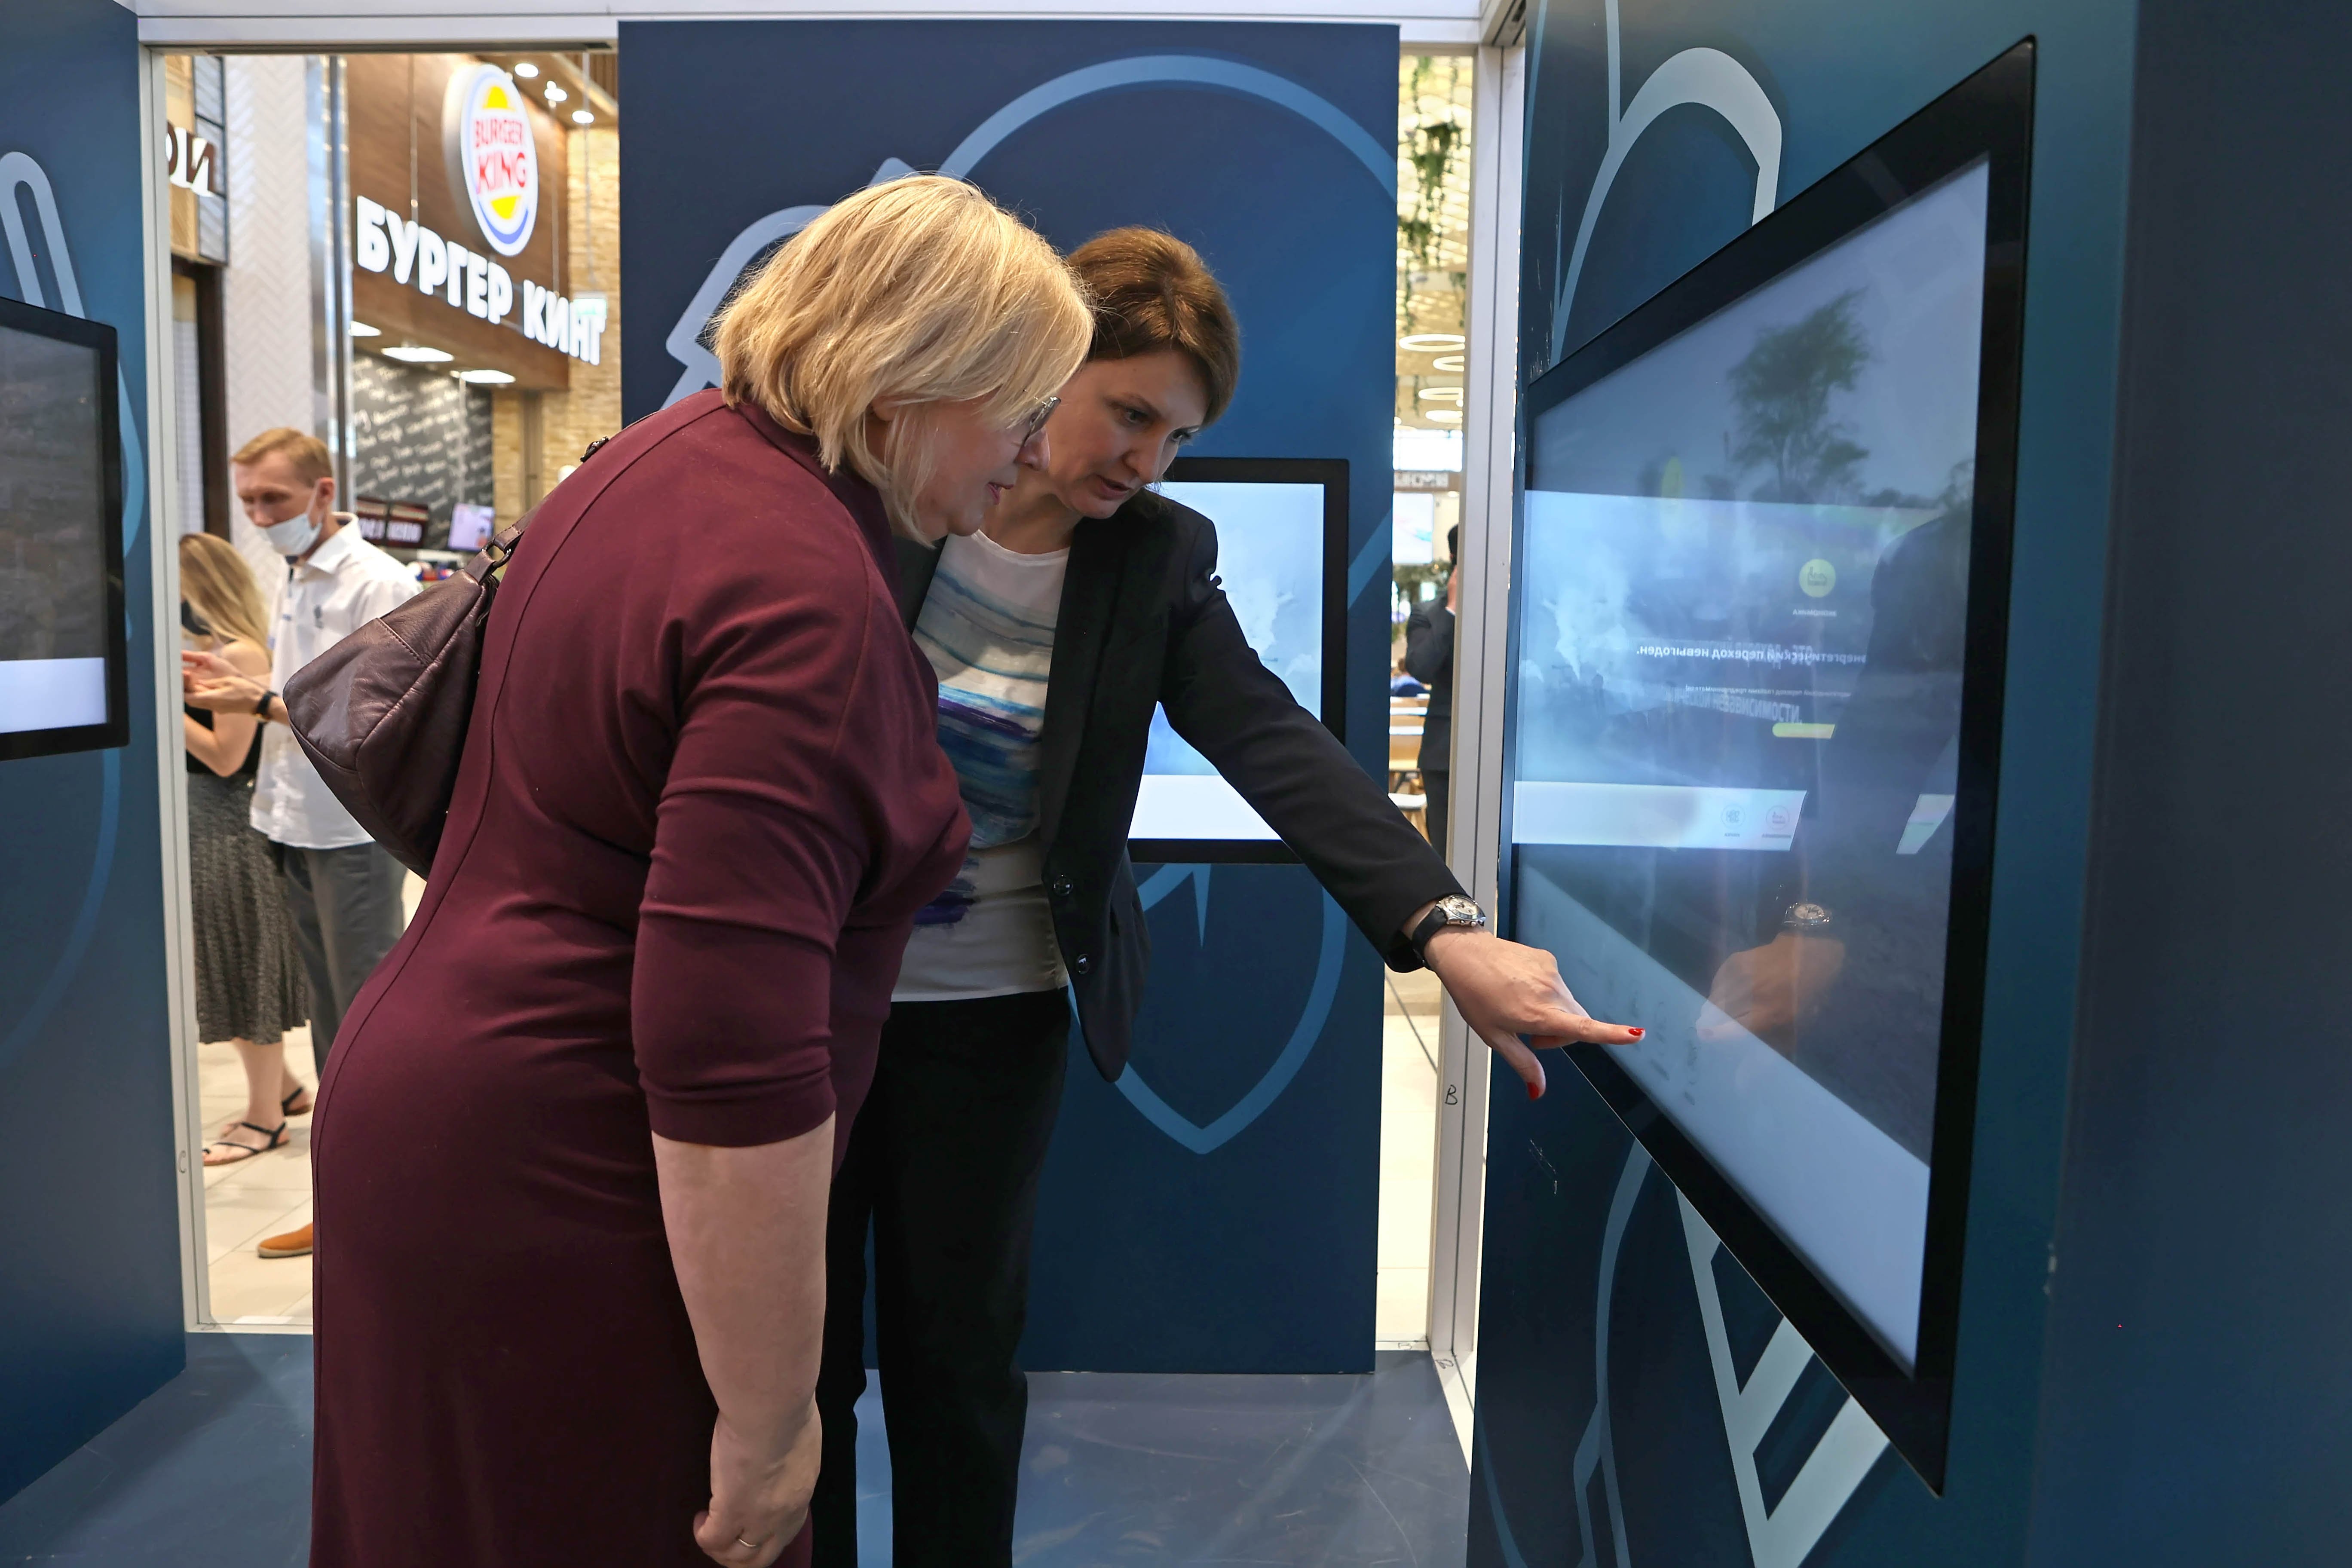 Zwei Frauen stehen an der Station "Erneuerbare Energien" und schauen auf einen Bildschirm. Juni 2021.